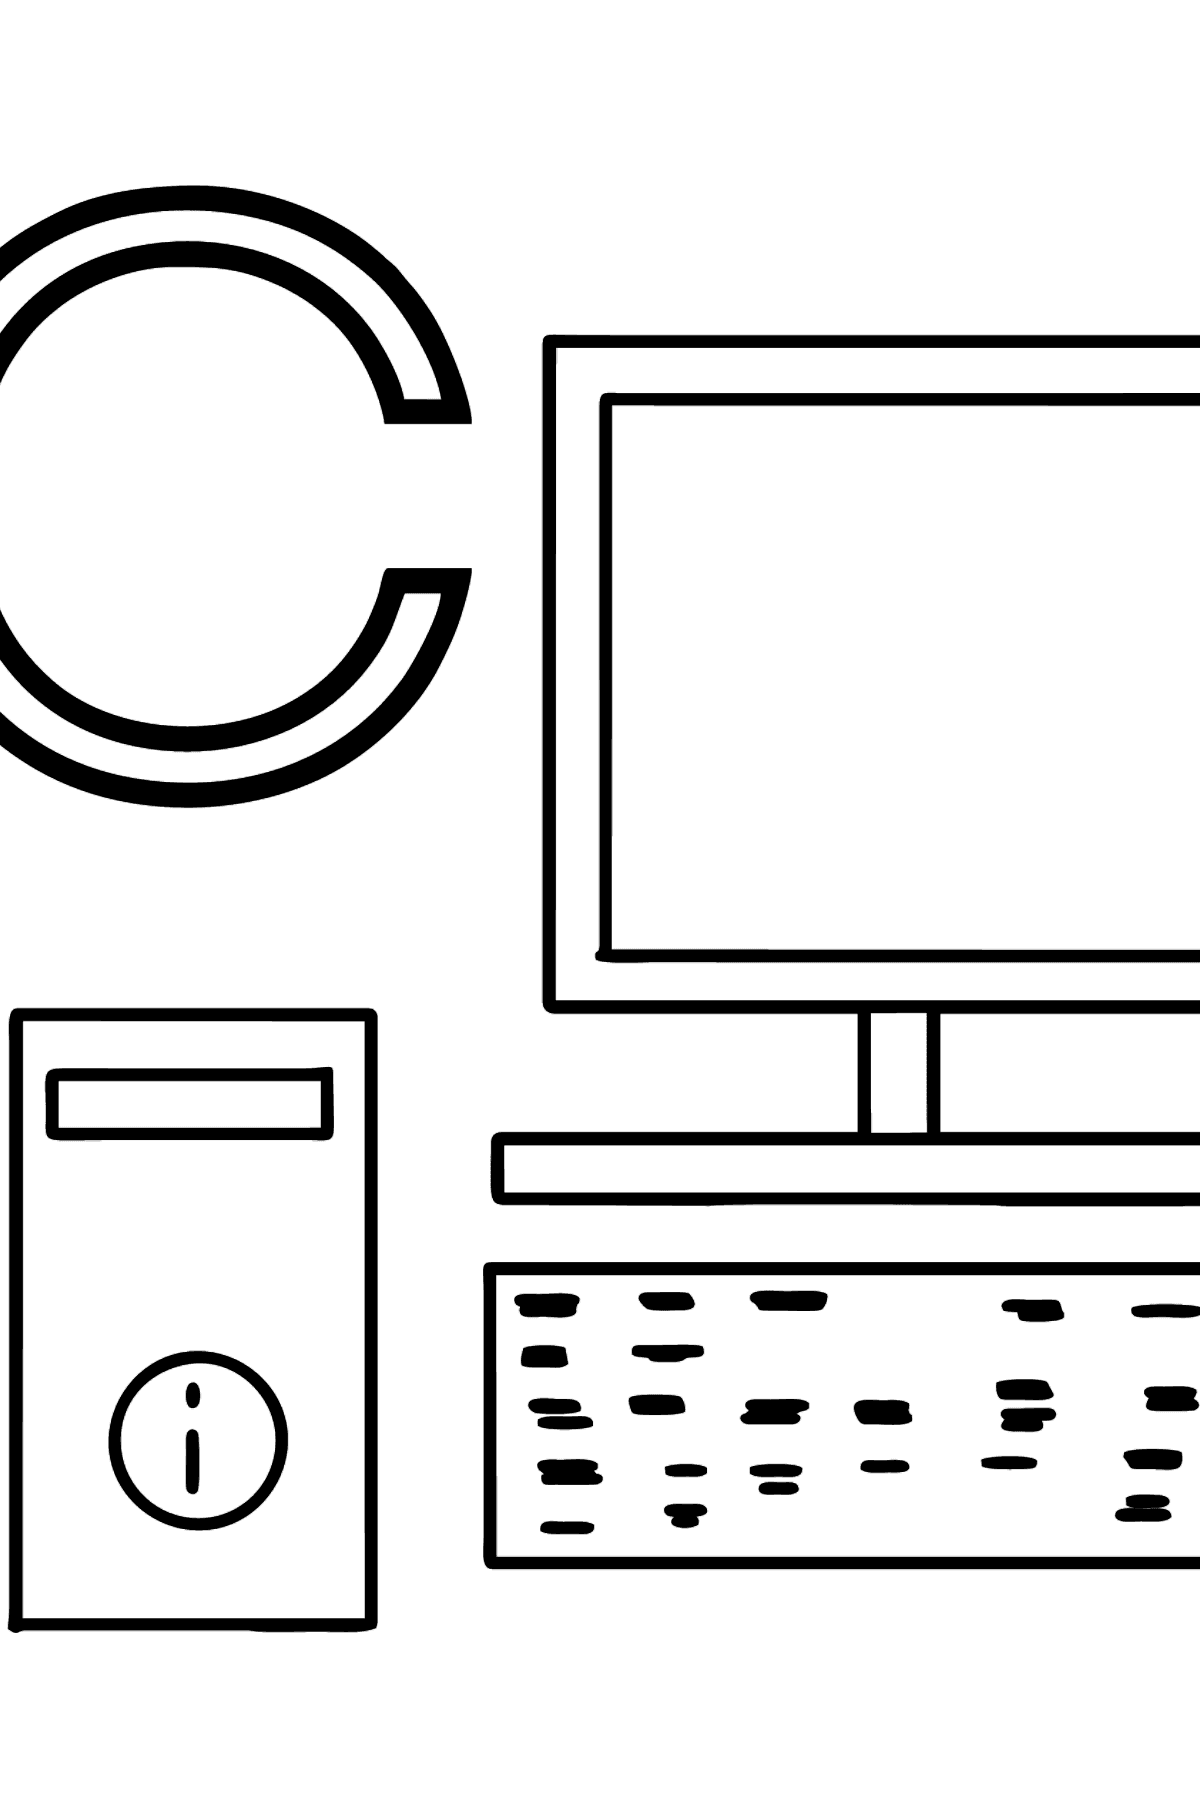 Раскраска Буква C немецкого алфавита - COMPUTER - Картинки для Детей